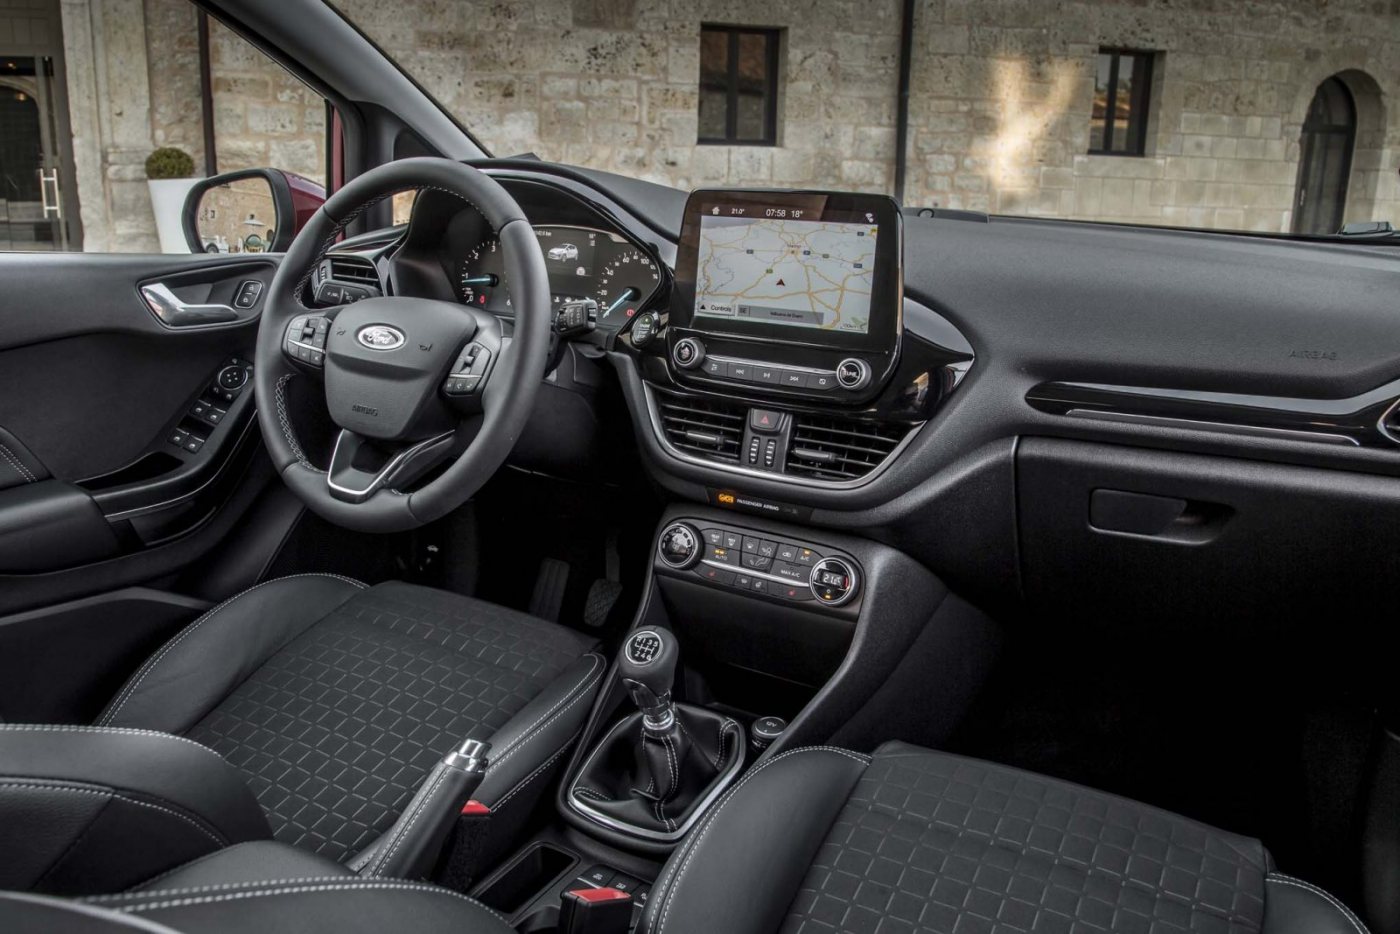 2018-Ford-Fiesta-Titanium-Euro-Spec-interior-02.jpg